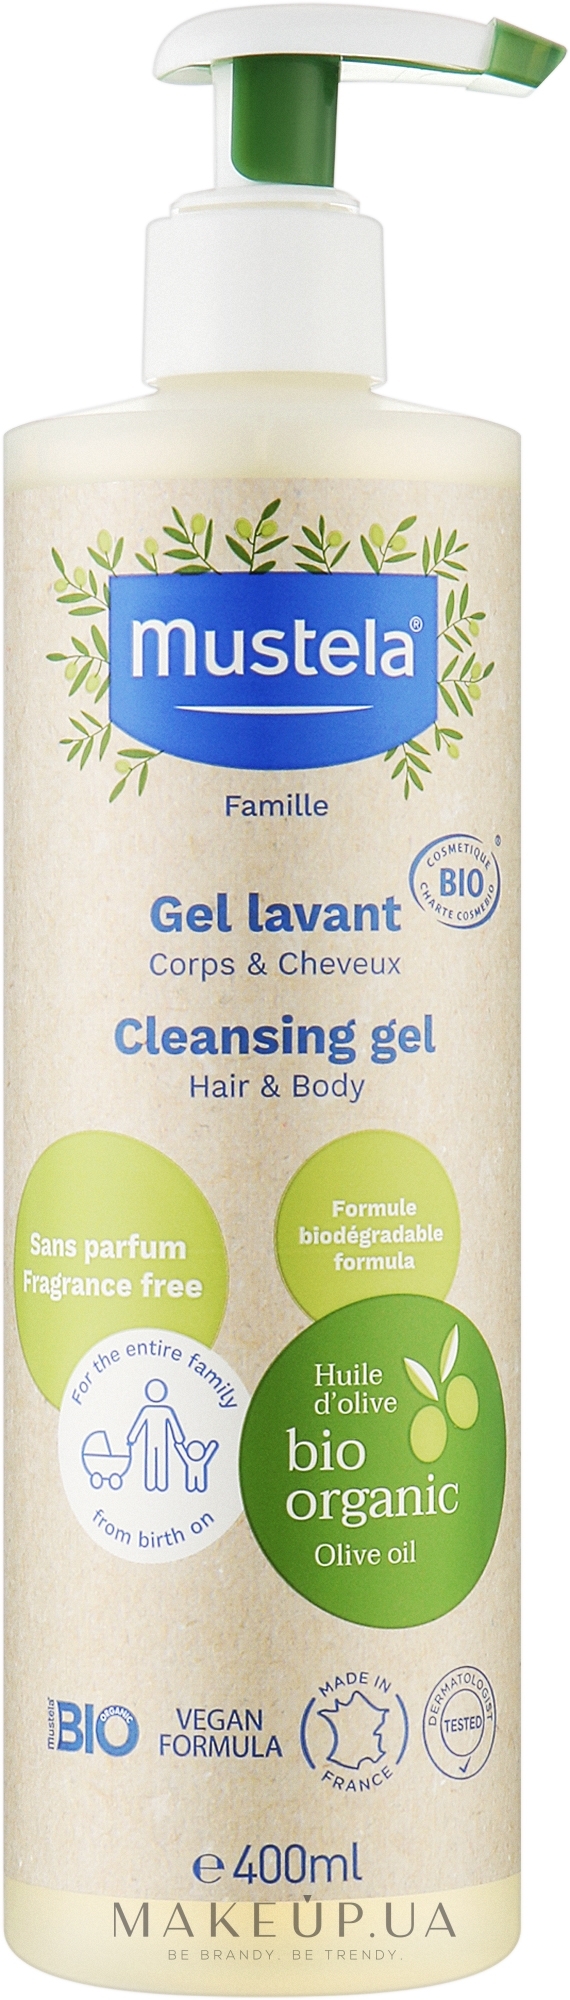 Очищающий гель для волос и тела - Mustela Famille Cleansing Gel Hair & Body — фото 400ml